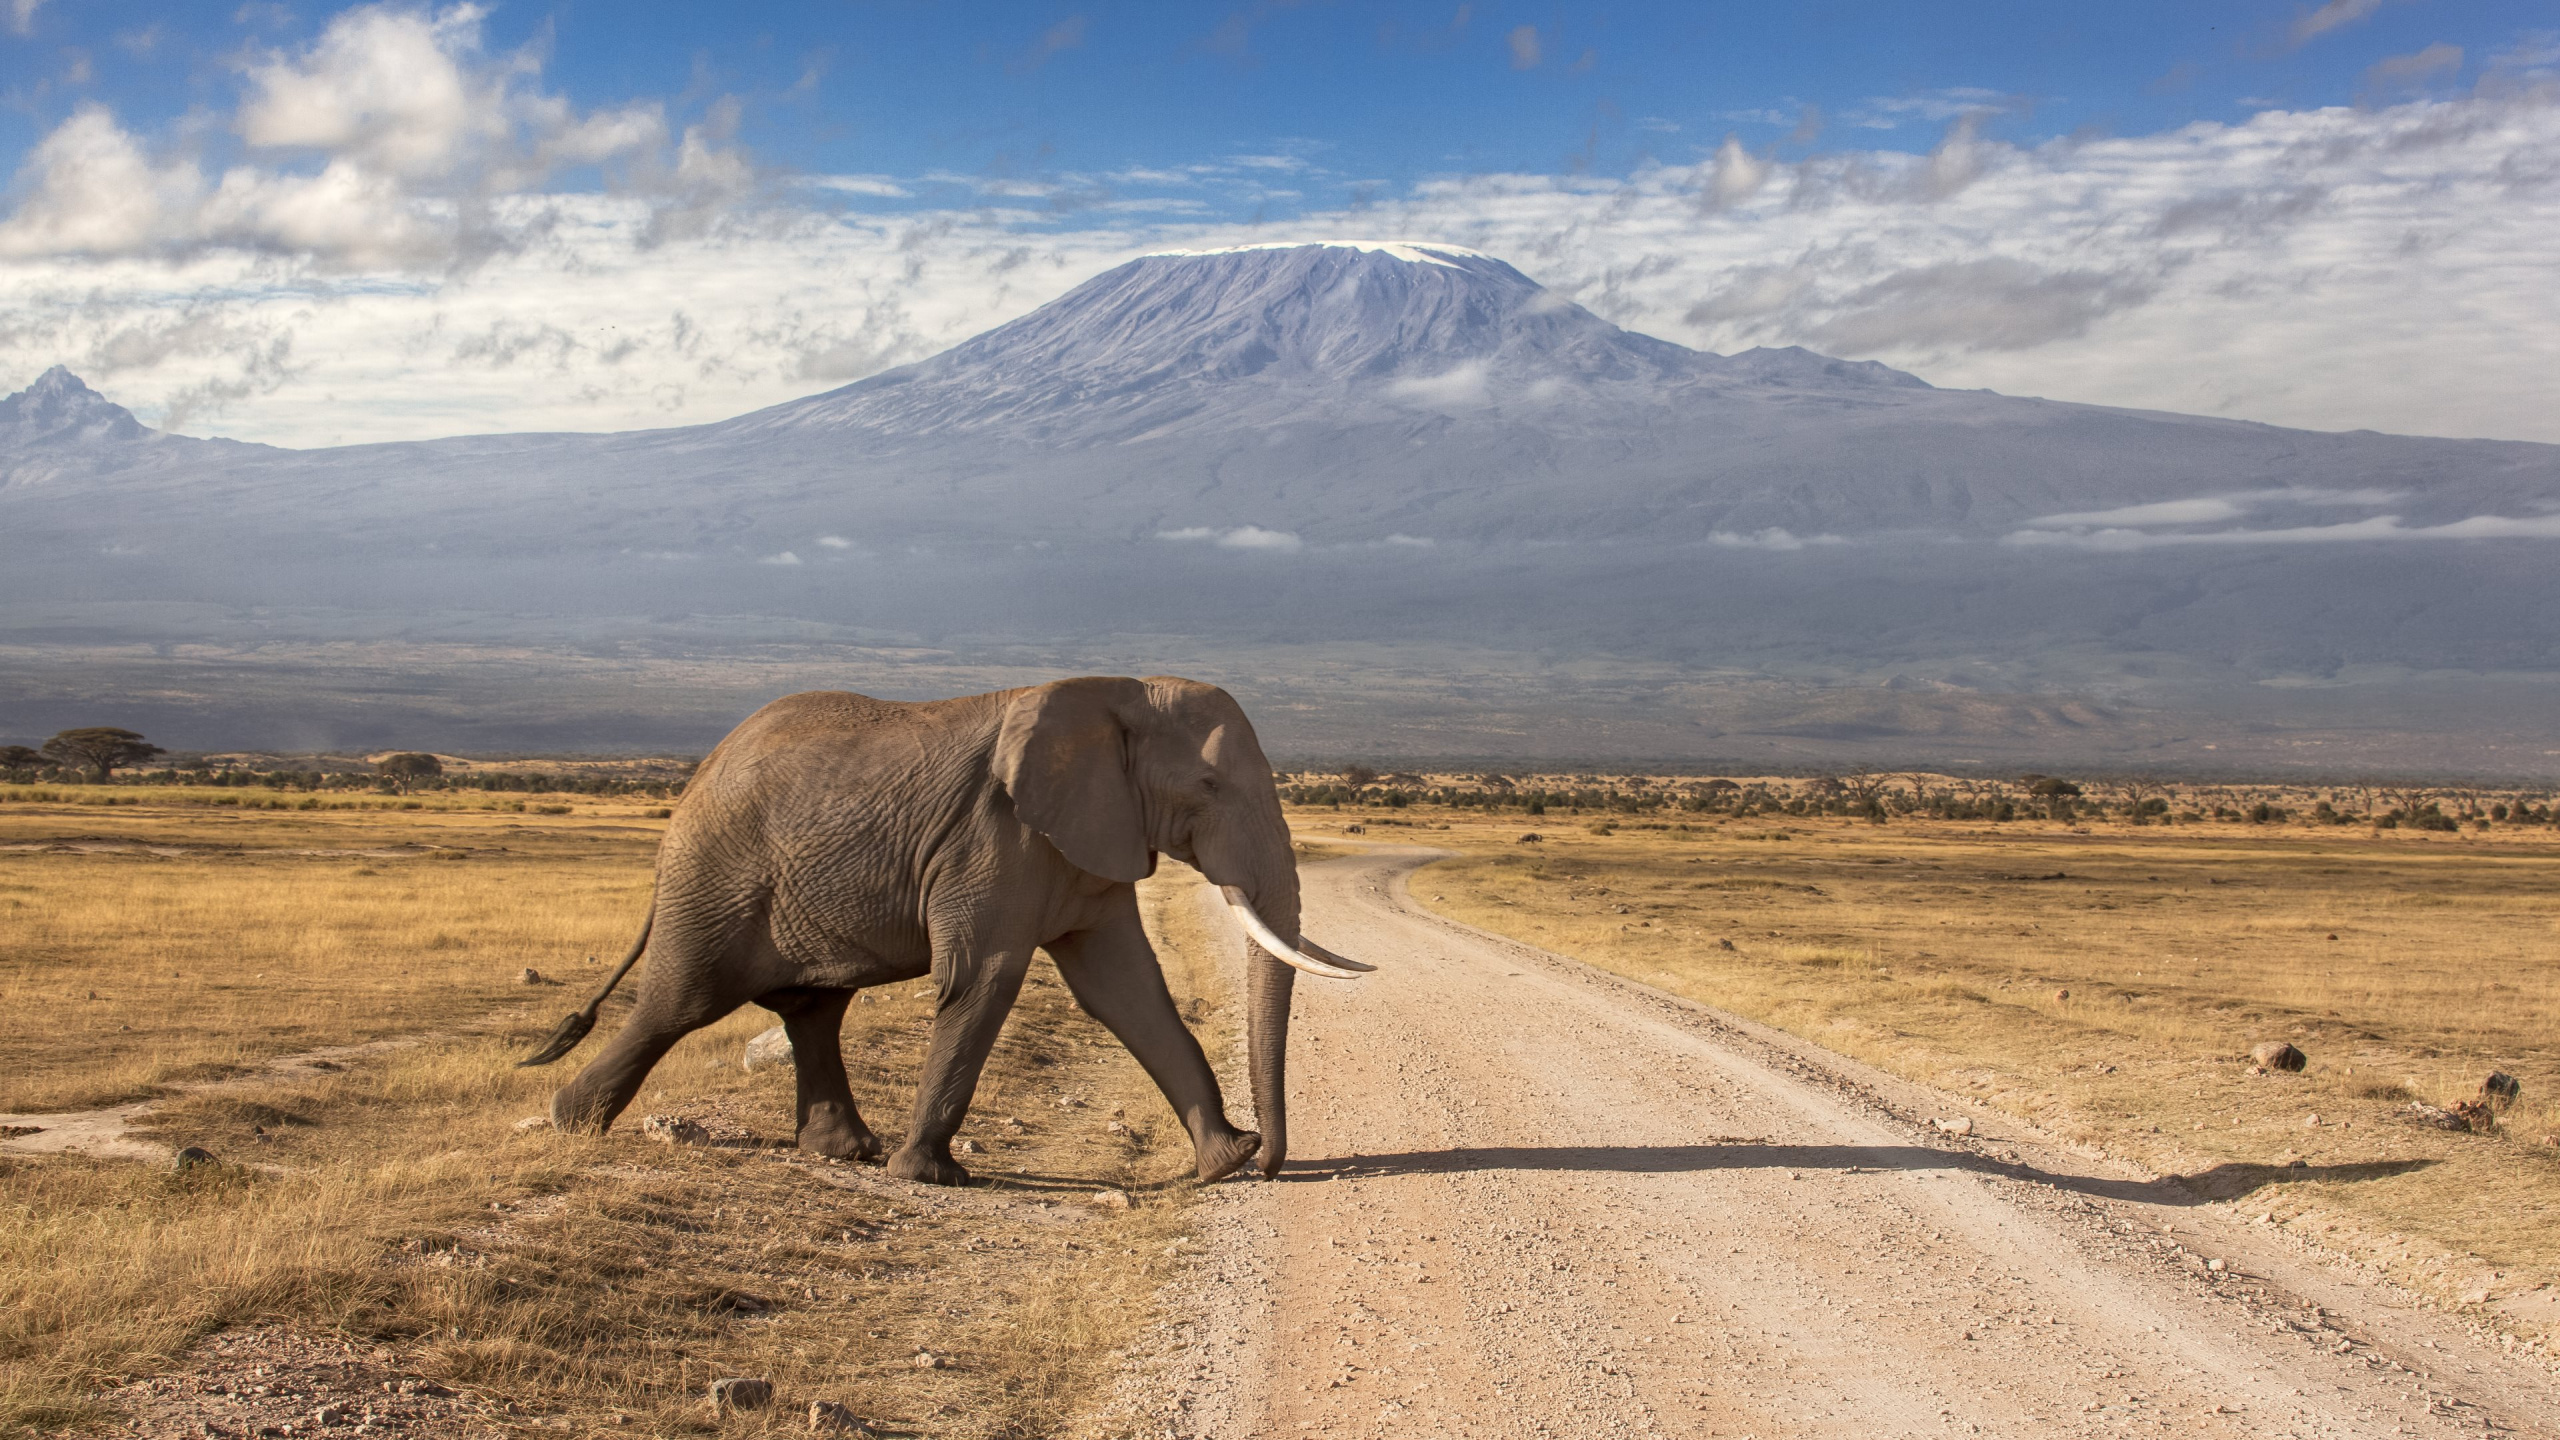 Elefante Caminando en la Carretera Durante el Día. Wallpaper in 2560x1440 Resolution